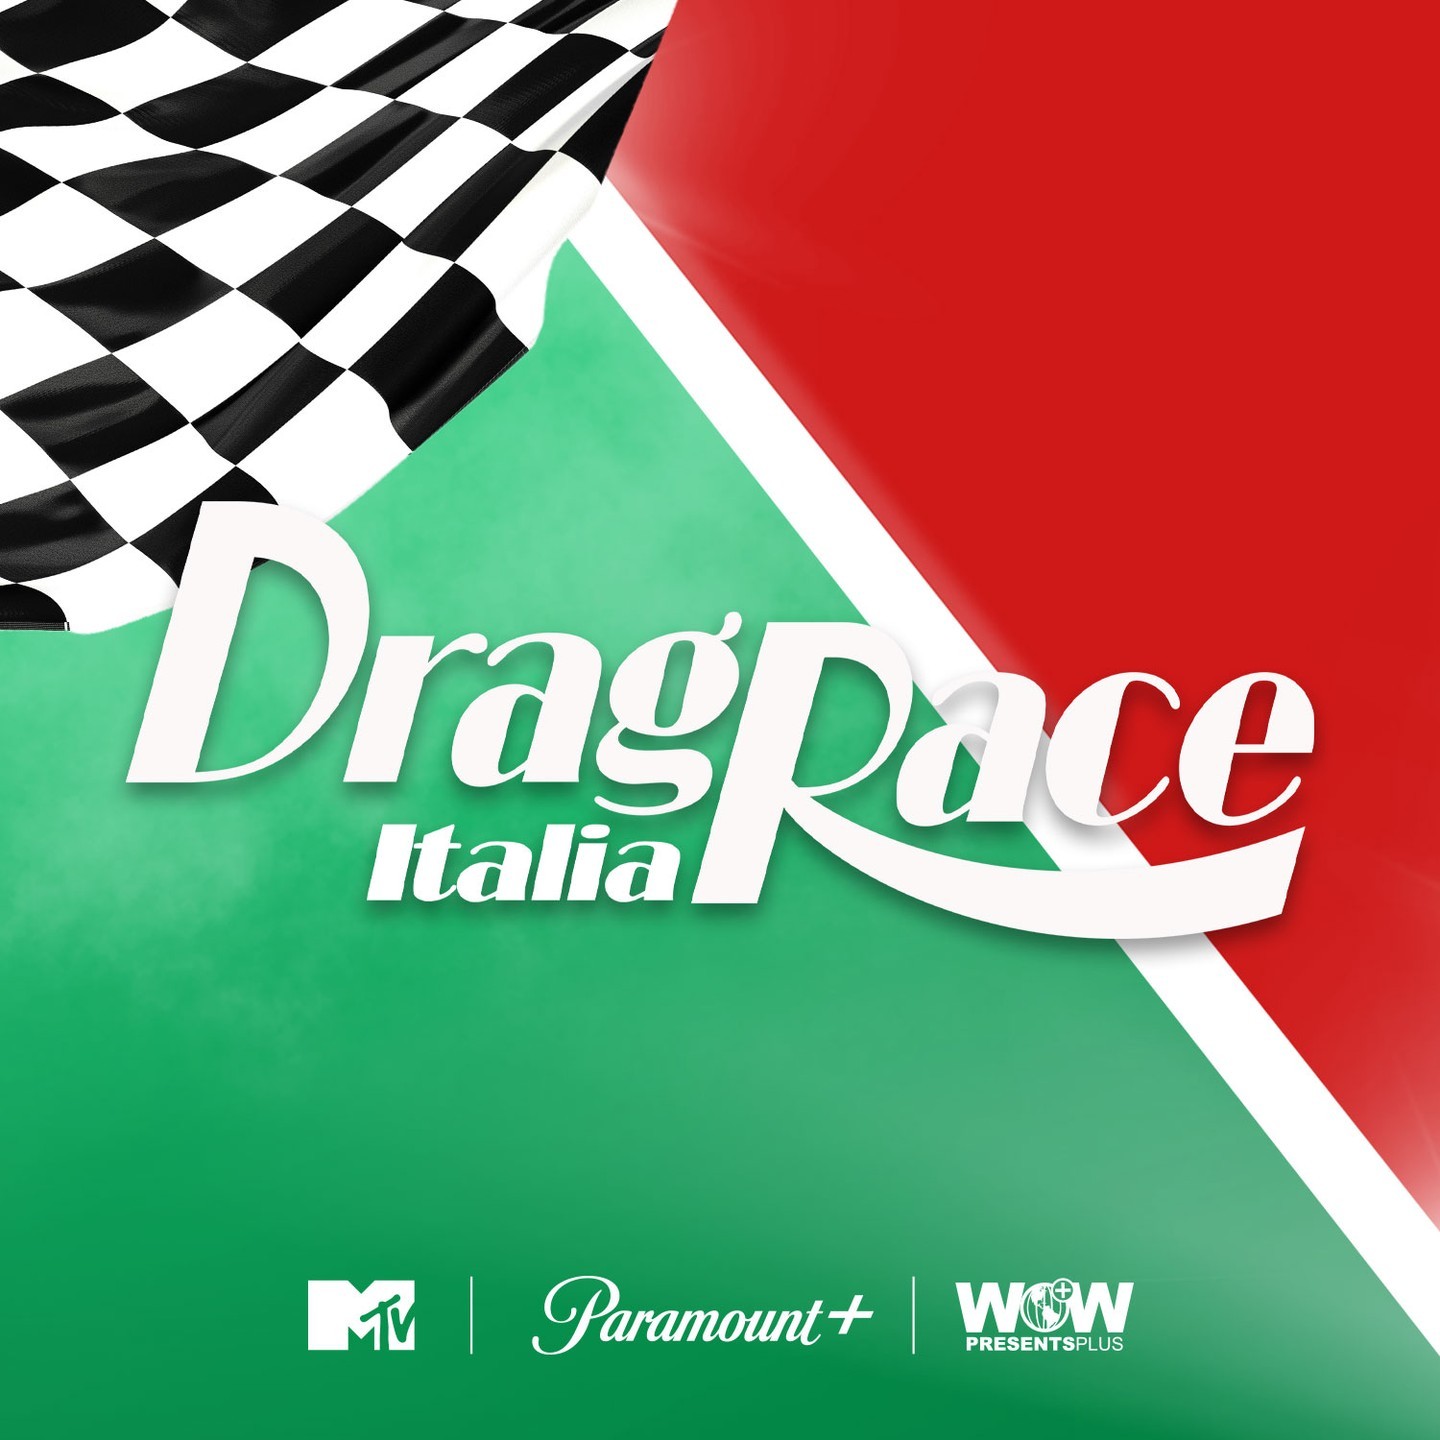 Tudo o que sabemos sobre Drag Race Brasil, versão nacional de RuPaul's Drag  Race